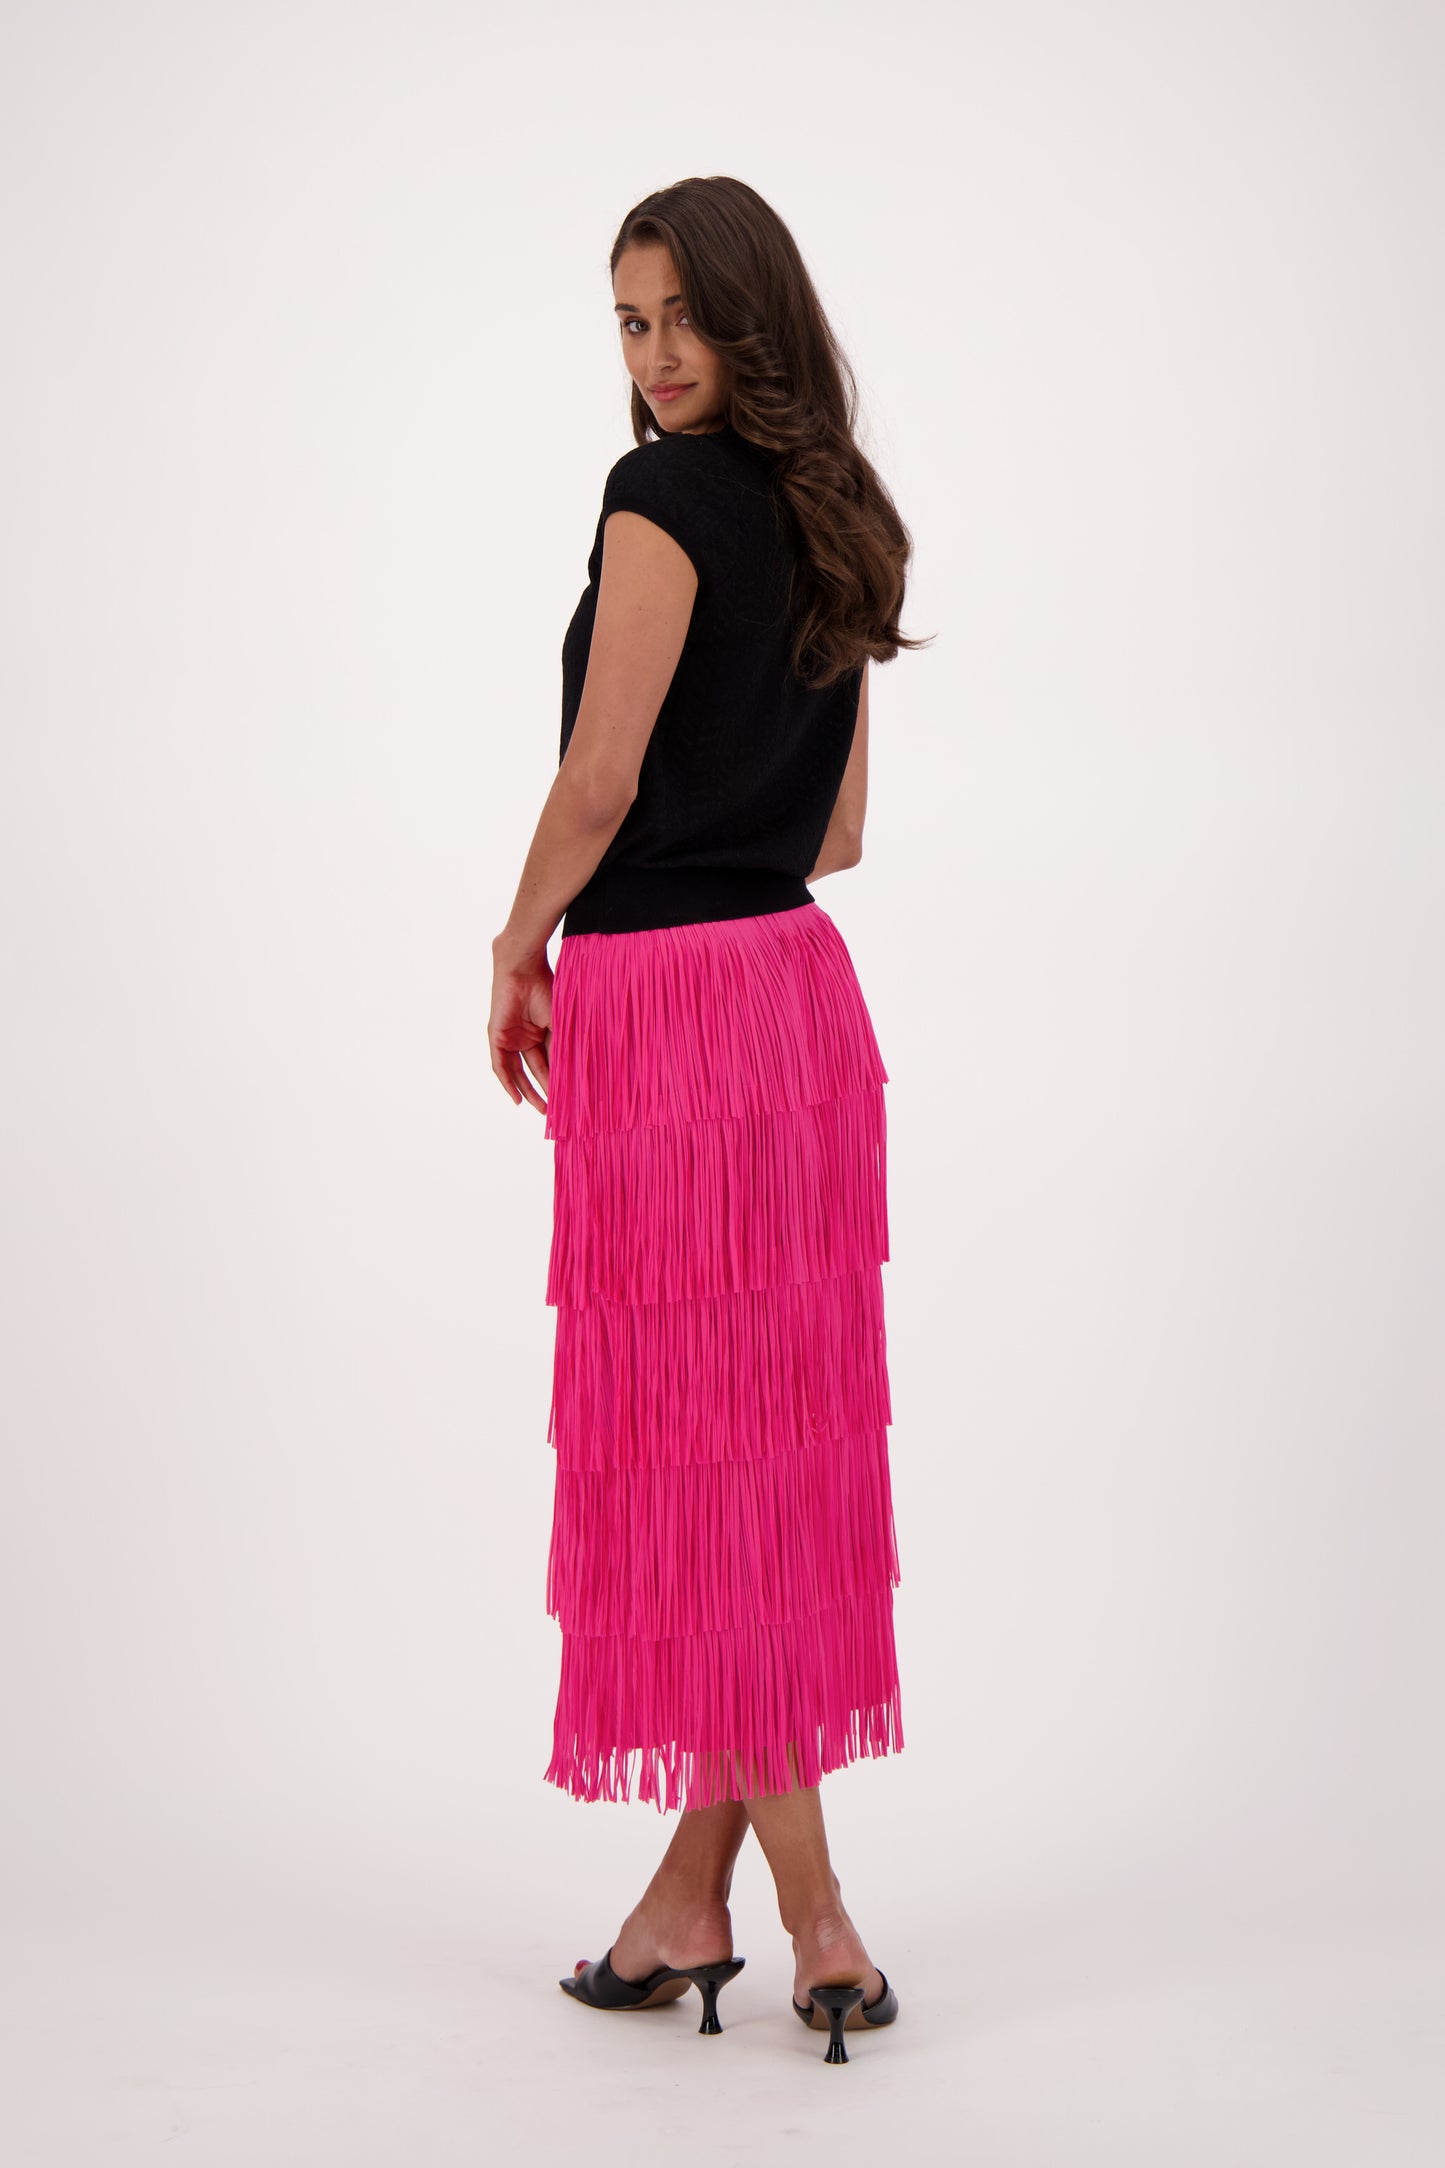 Fringe Trim Long Skirt